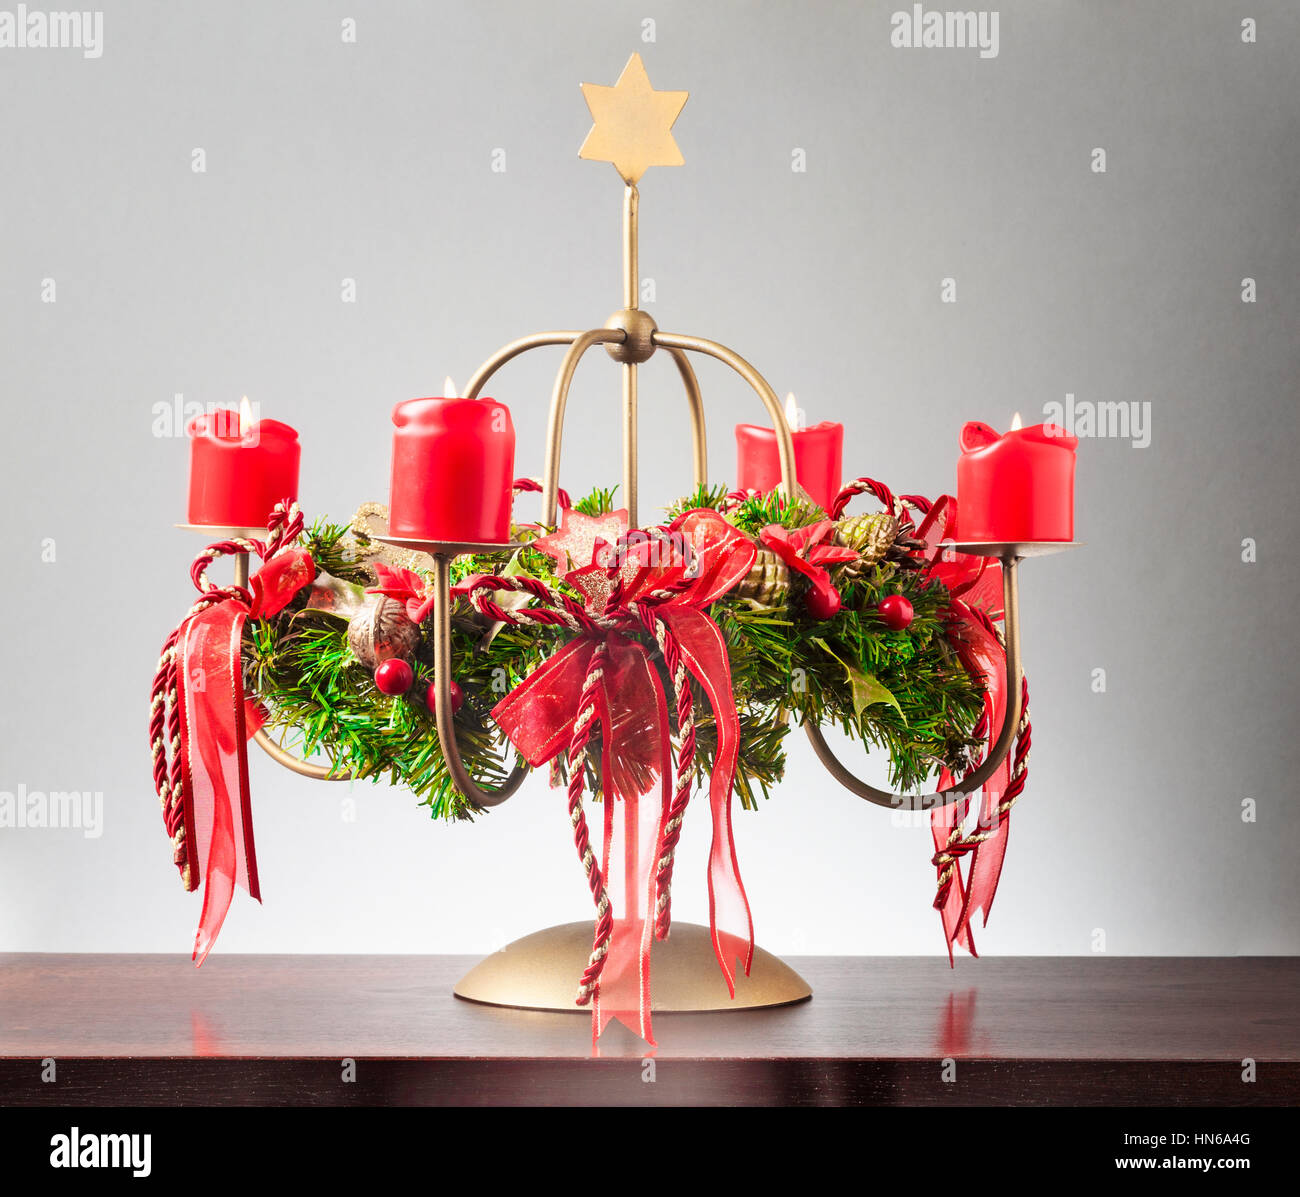 Vintage corona de adviento con cuatro velas rojas ardiente y estrella de oro sobre fondo gris, luces y decoraciones para navidad Foto de stock